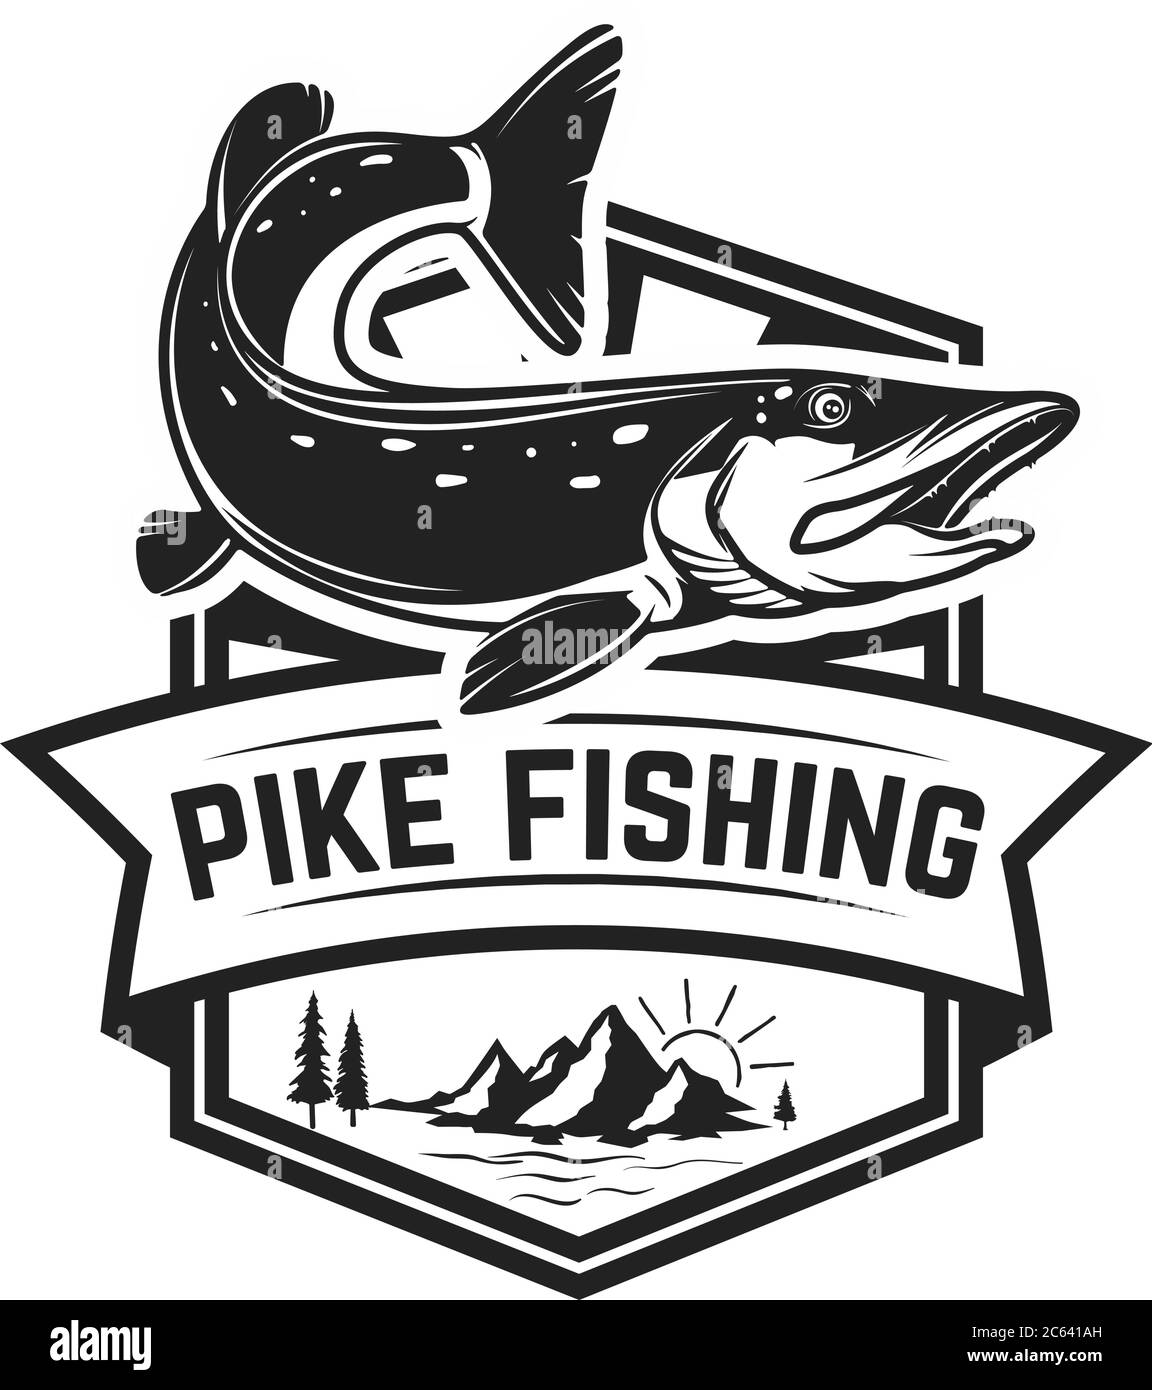 sakk hatás eredet pike fishing logo Levelezés logo selyem